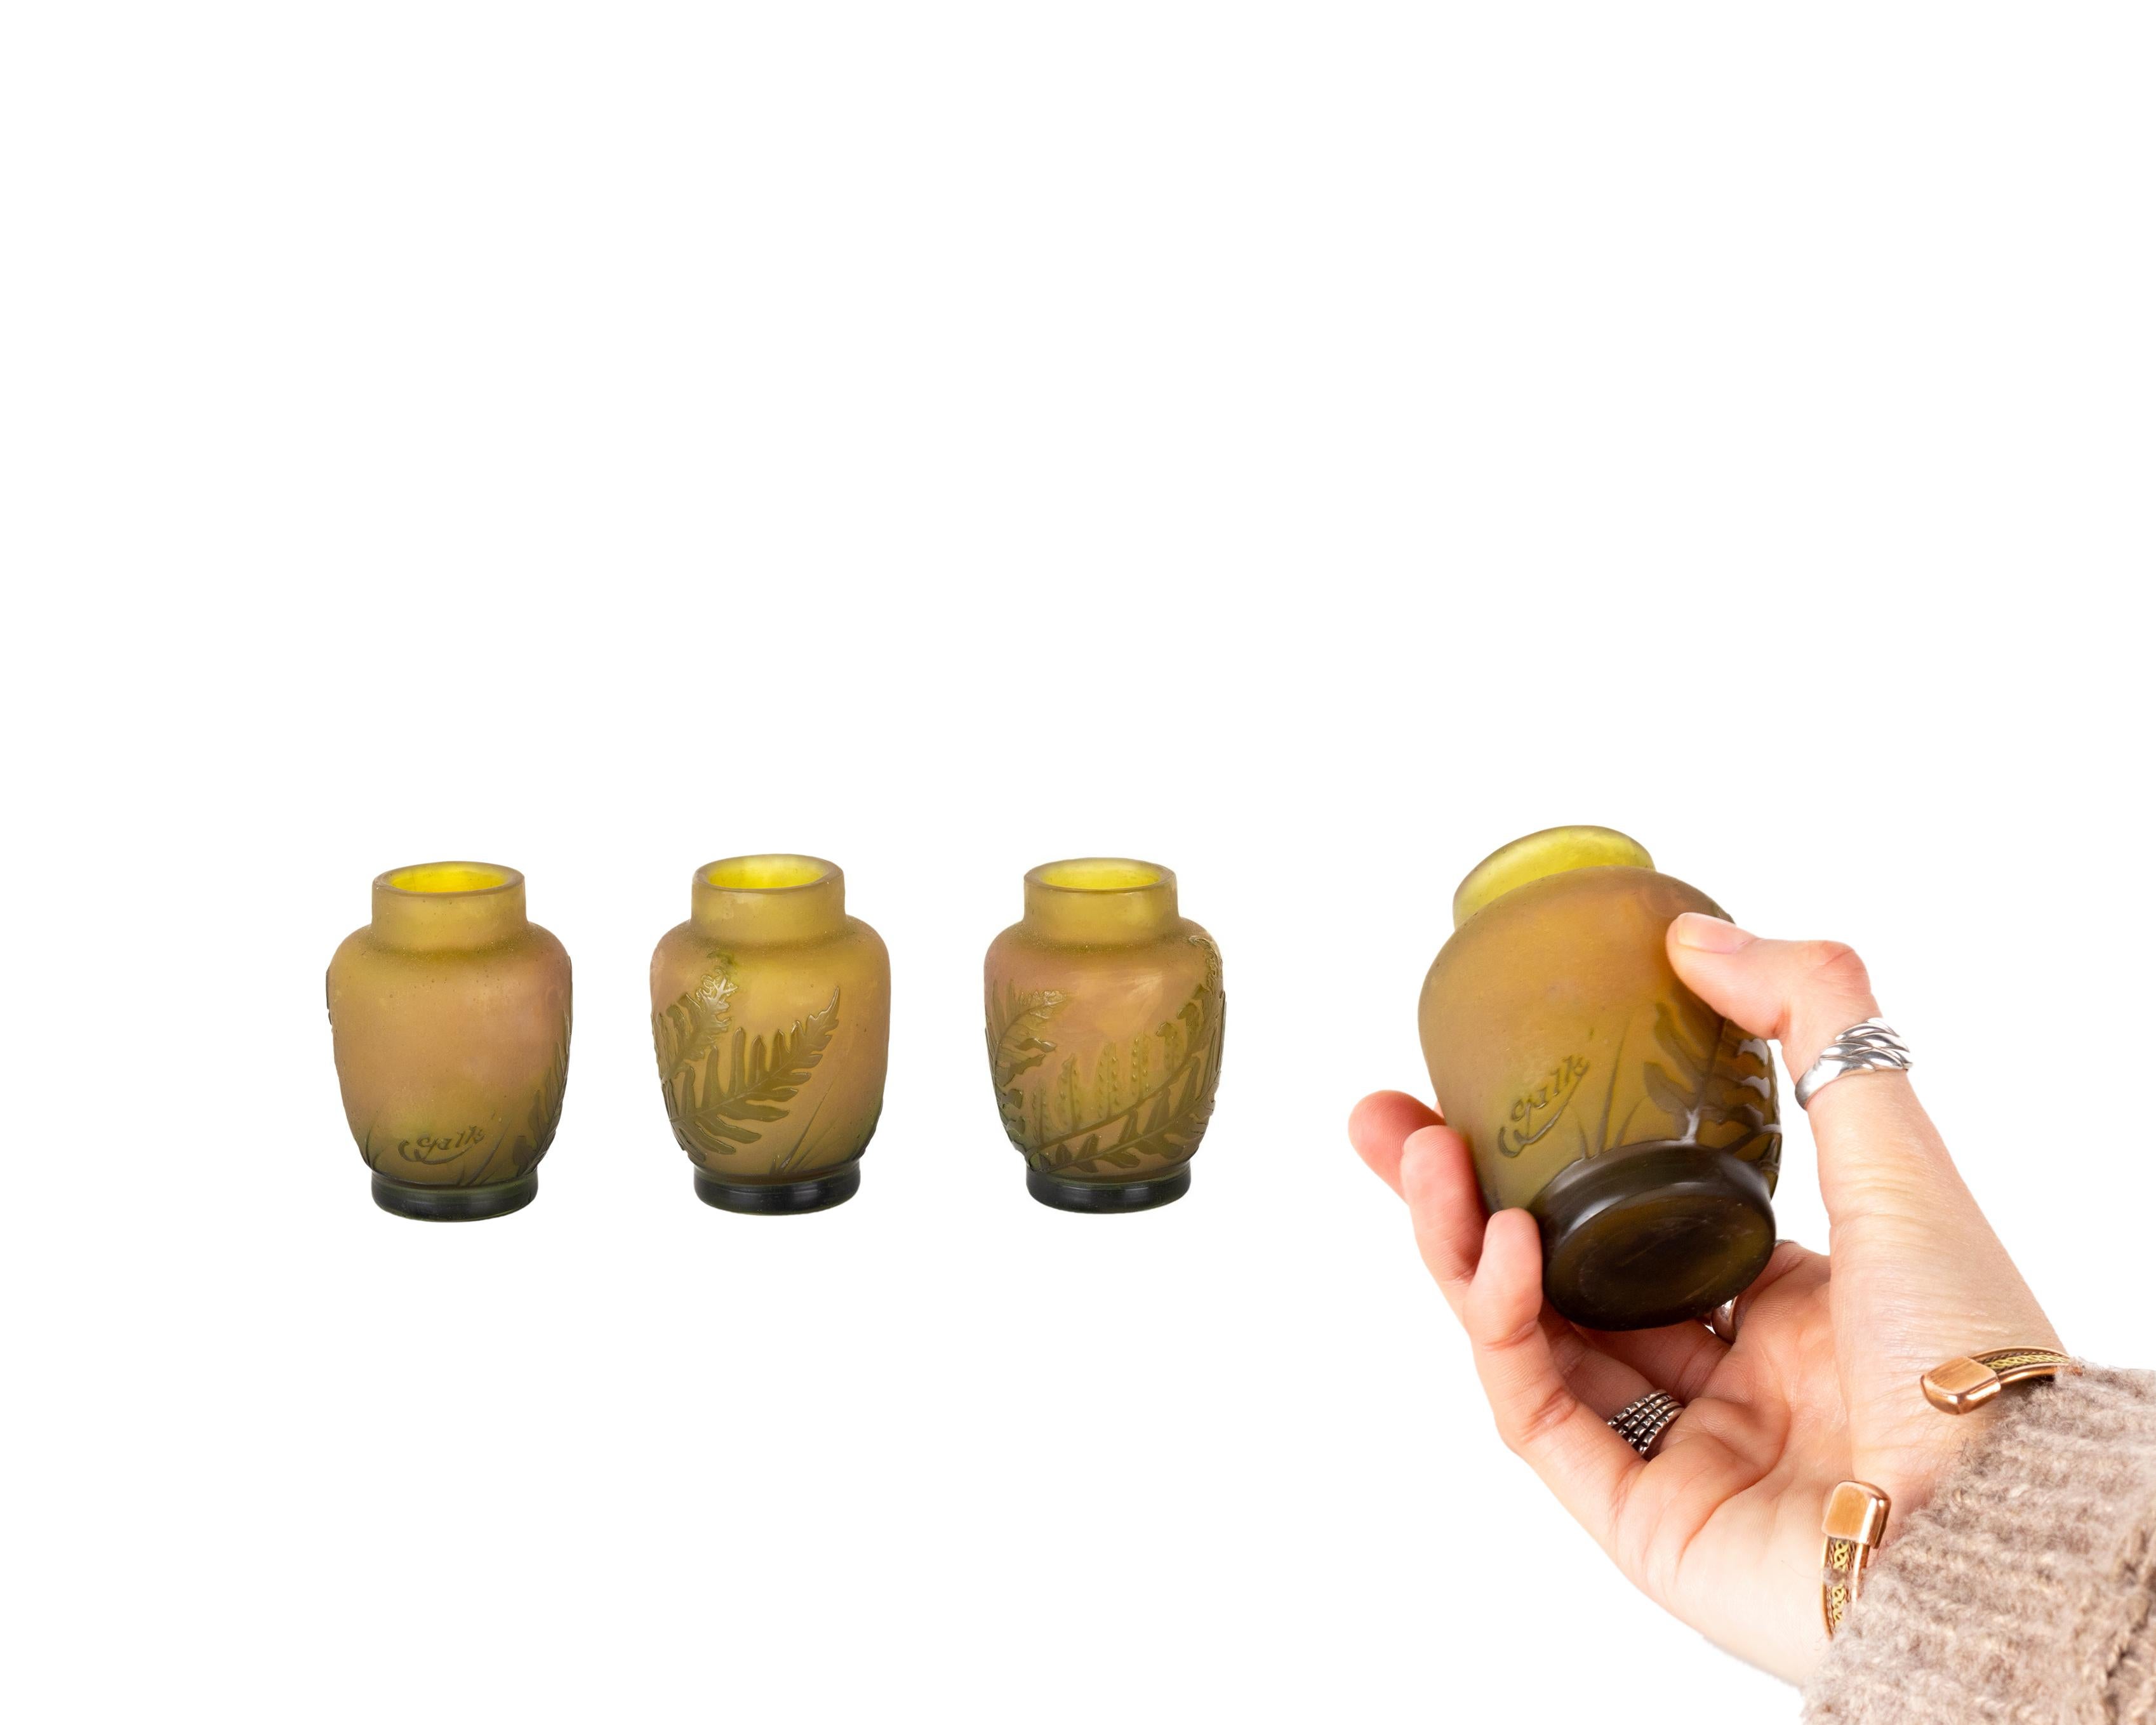 Vase mit Säureätzung, dekoriert mit grünen Farnen auf opakem Gelb
Hintergrund.  
Beim Kameenglas werden zwei Farben übereinander gelegt, so dass die Farbe der darunter liegenden Schicht sichtbar wird. 
Galle' unterzeichnet.
